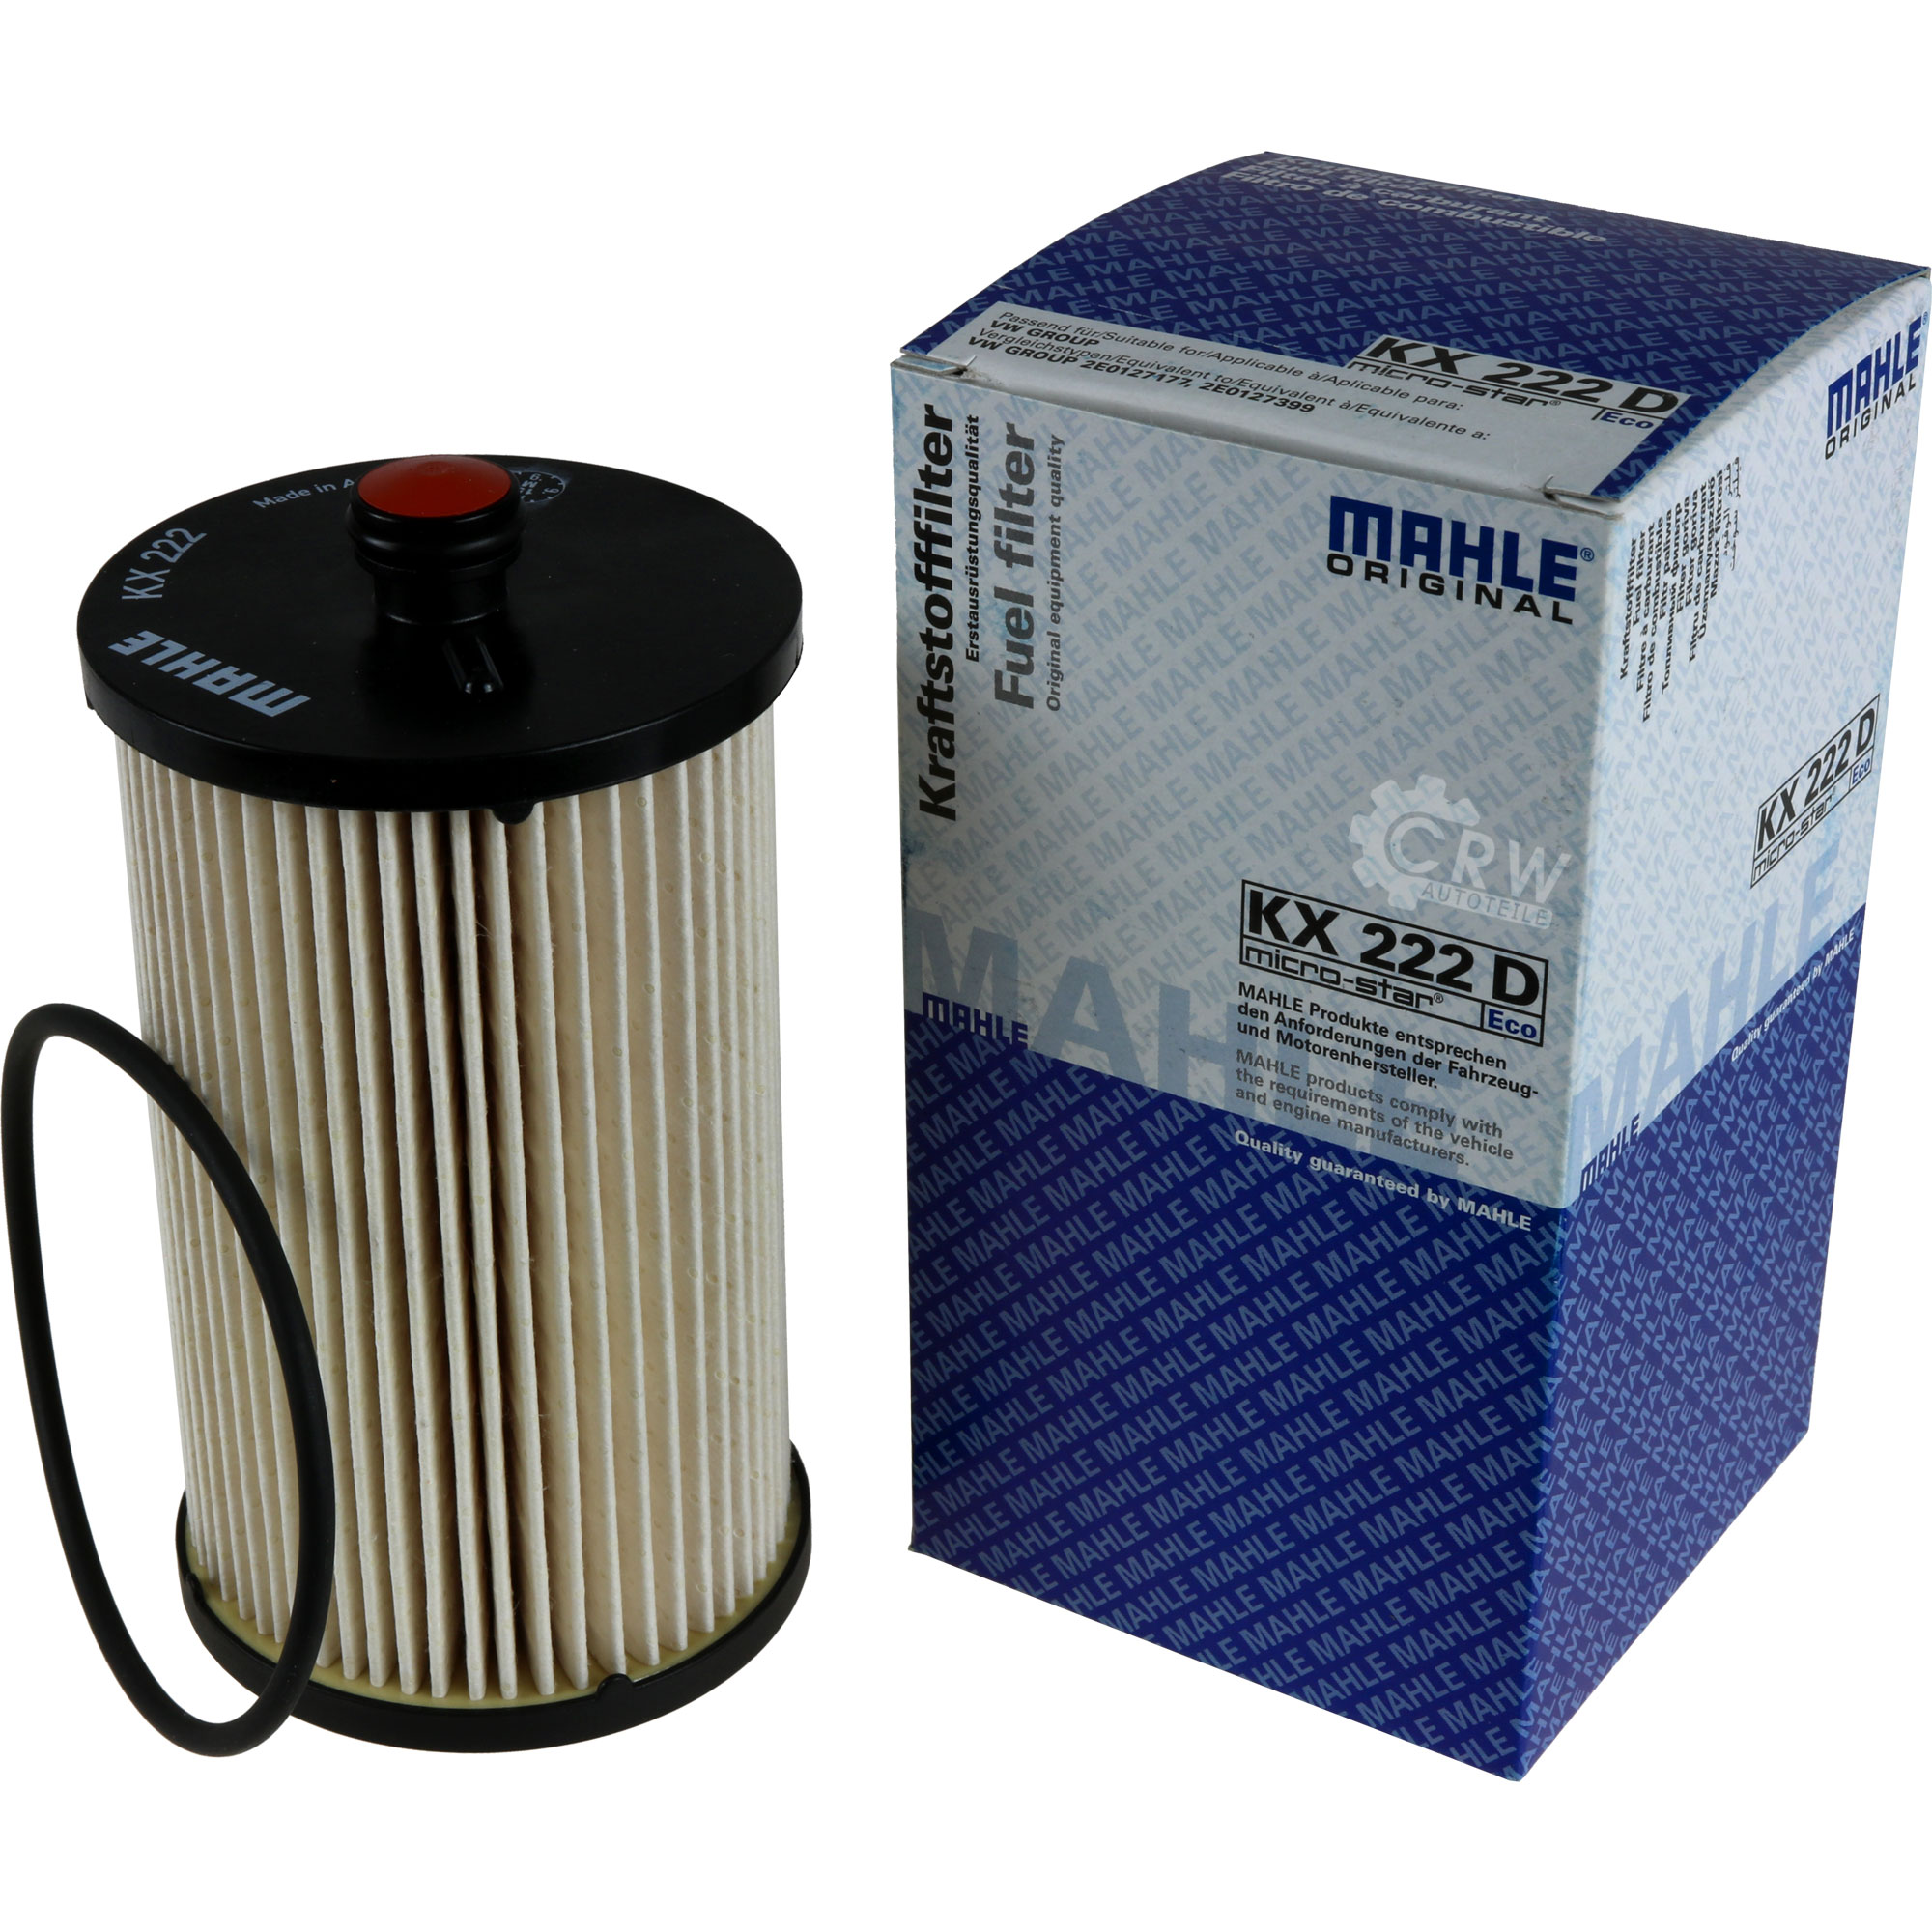 MAHLE Kraftstofffilter KX 222D Fuel Filter